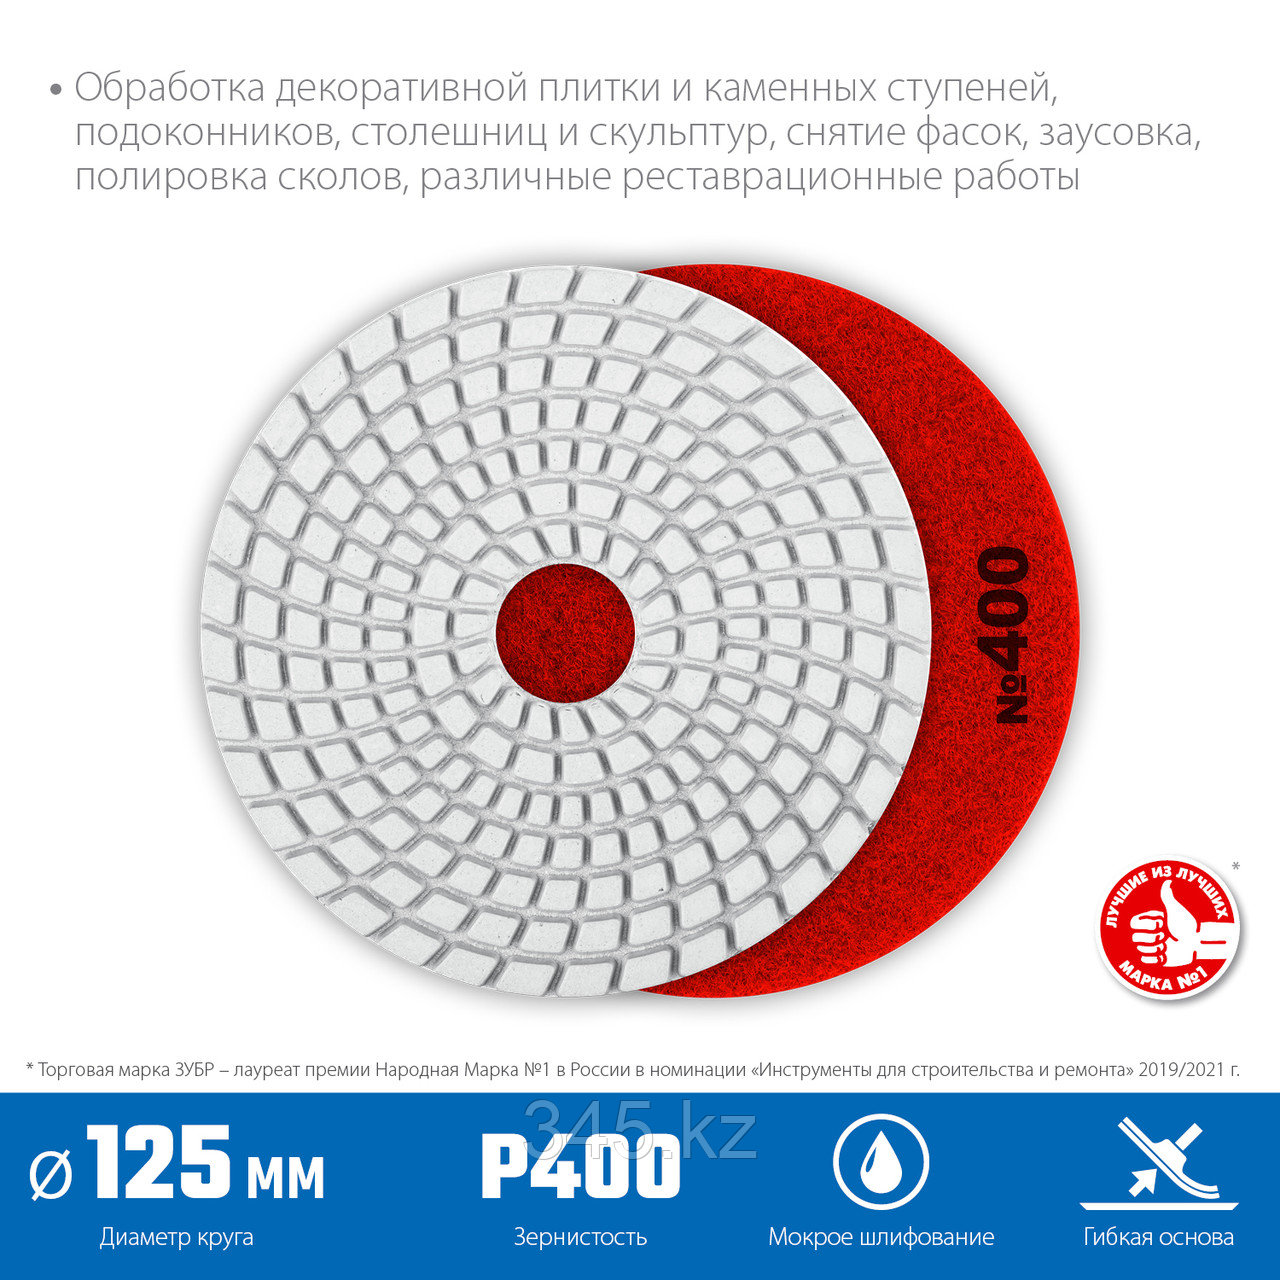 Алмазный гибкий шлифовальный круг ЗУБР 125мм №400 (Черепашка) для мокрого шлифования